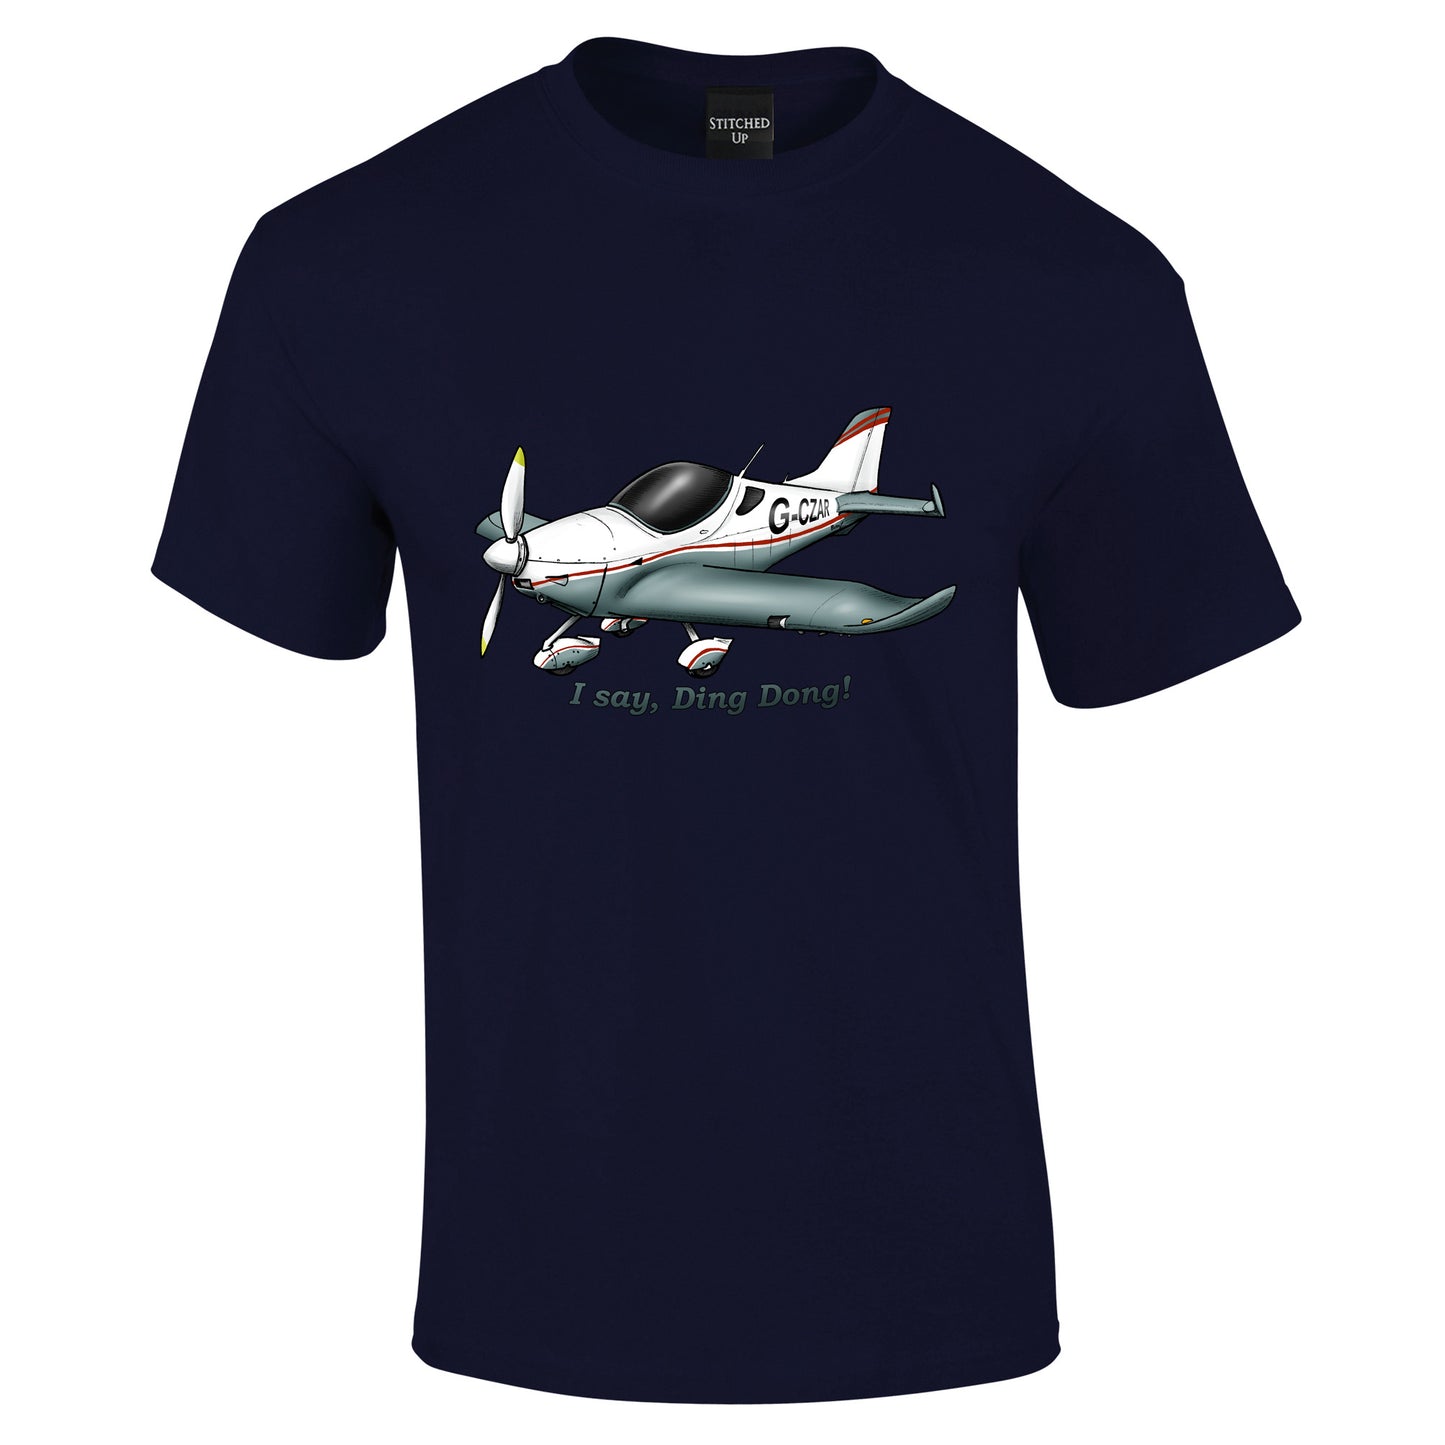 Sportcruiser Aircraft T-Shirt